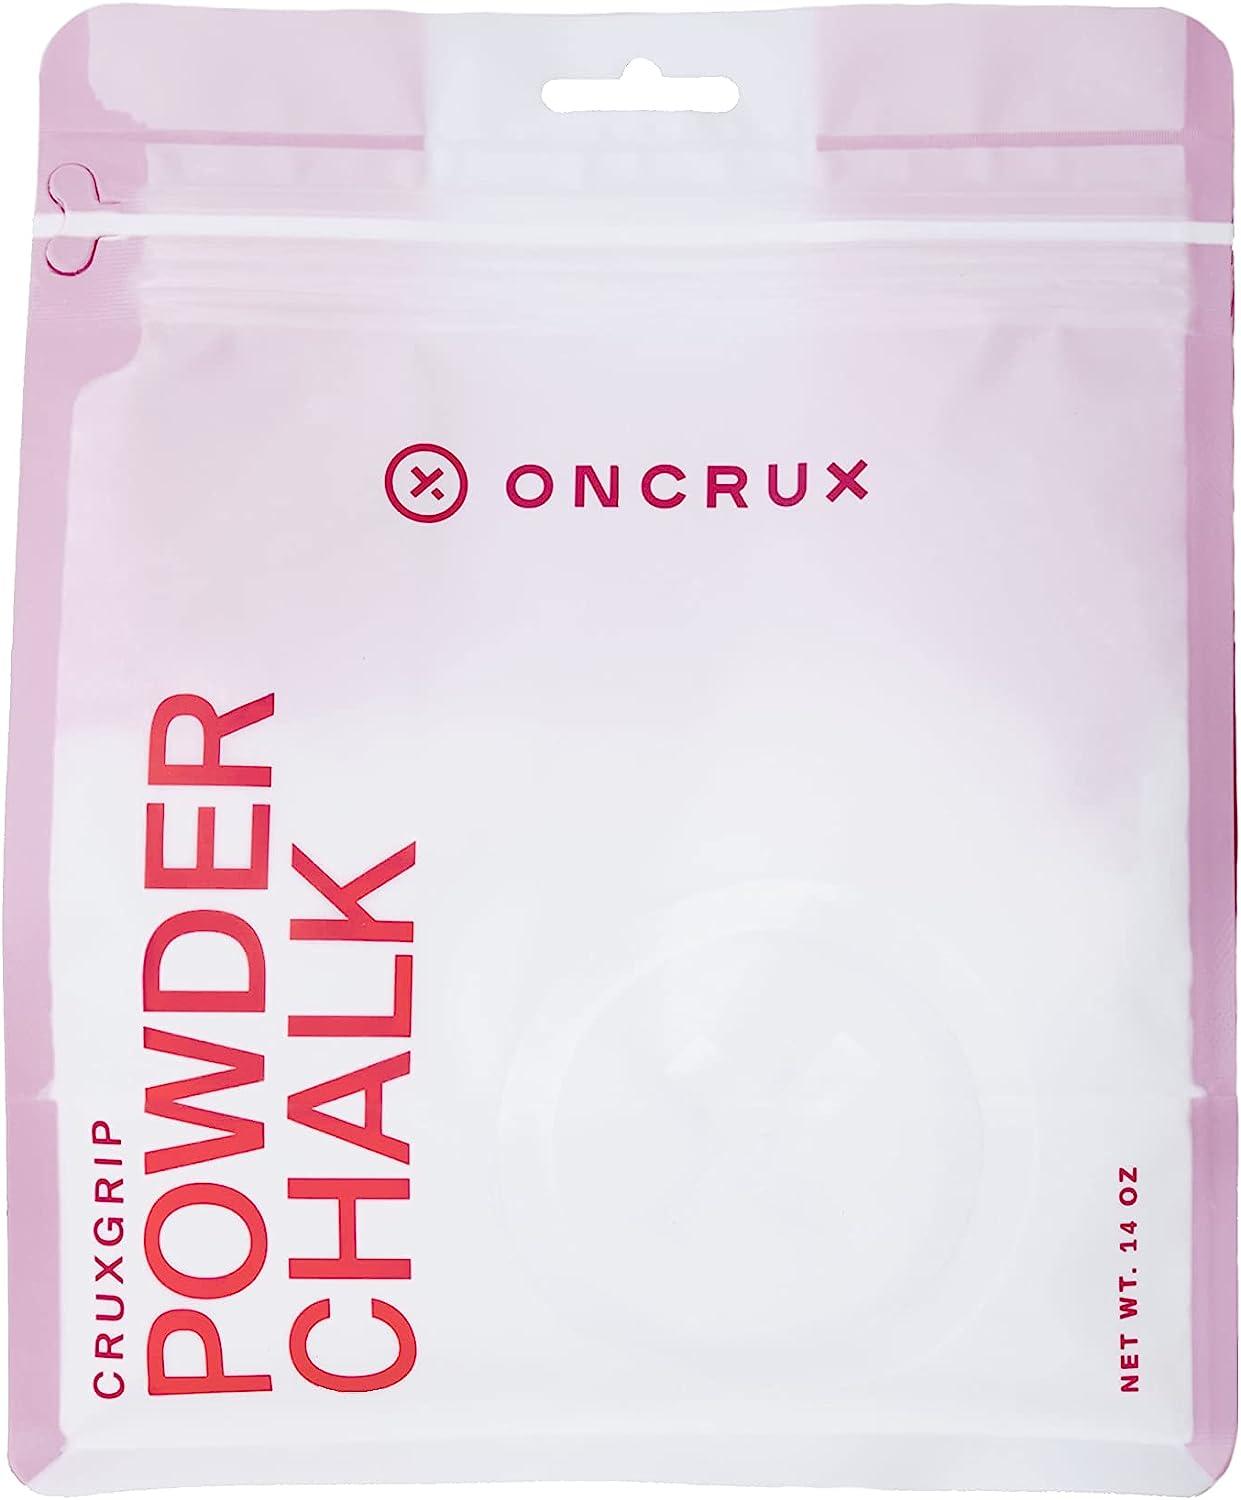 Bulk Gym Chalk Powder Pink, Light Bule Sports Chalk Powder - Buy Bulk Gym Chalk  Powder Pink, Light Bule Sports Chalk Powder Product on